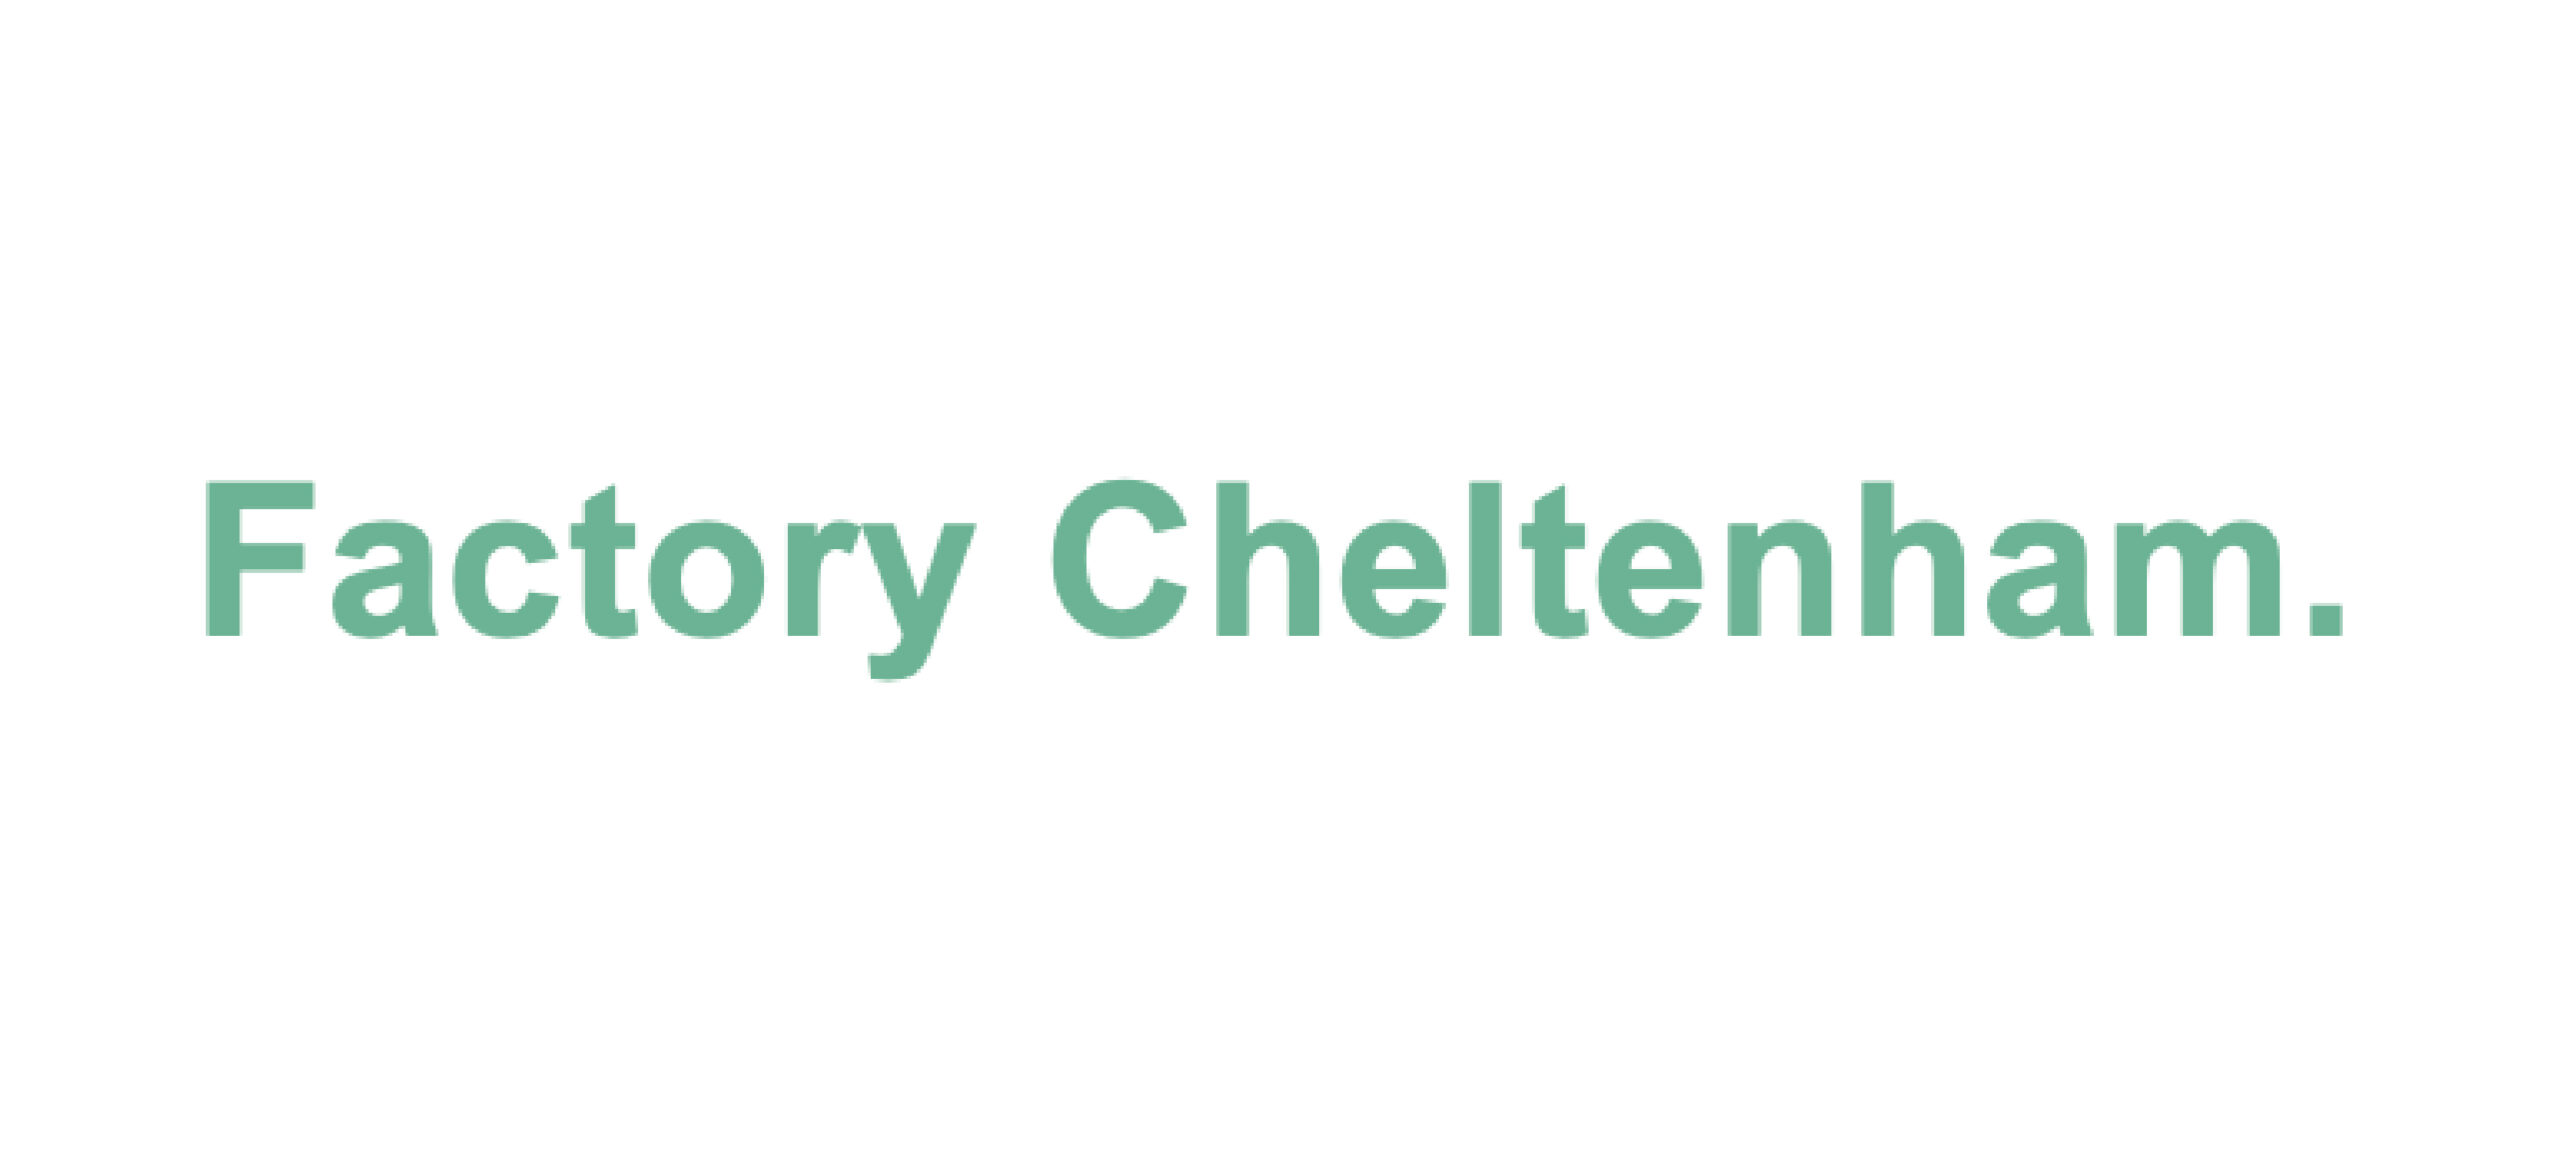 Factory Cheltenham